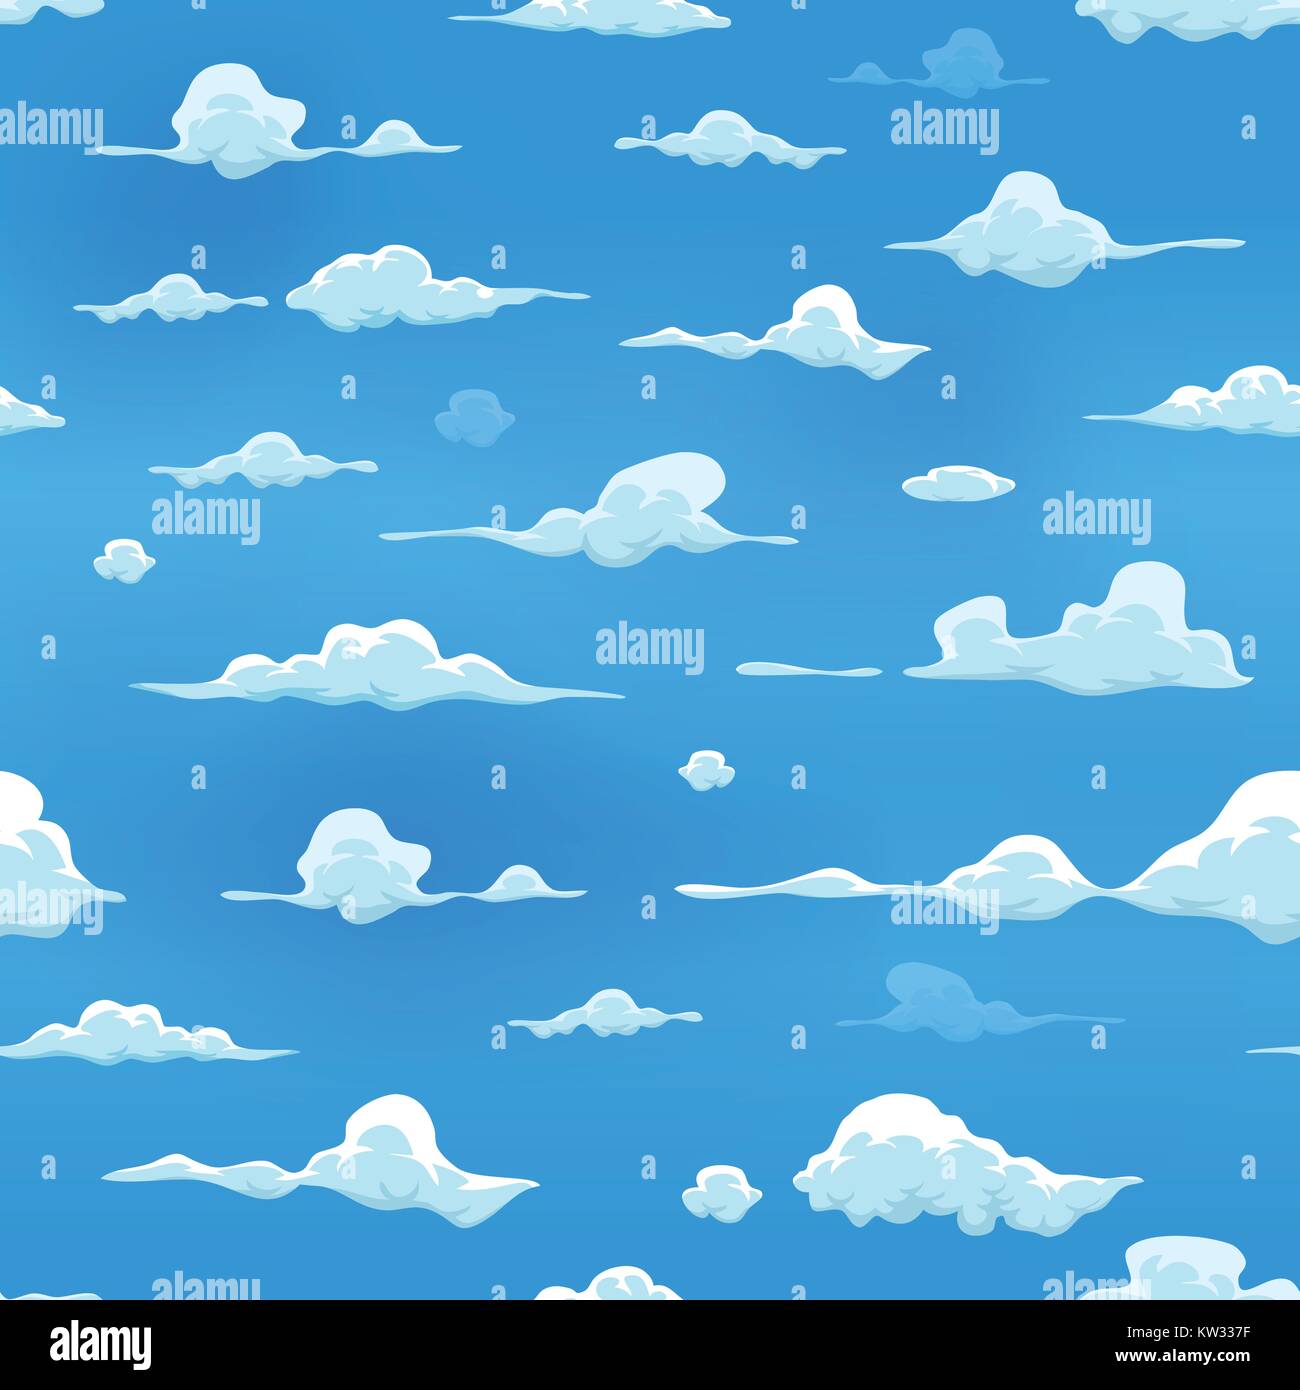 Illustration de fond de ciel bkue transparente avec cartoon, les nuages, la fumée et le brouillard icons Illustration de Vecteur